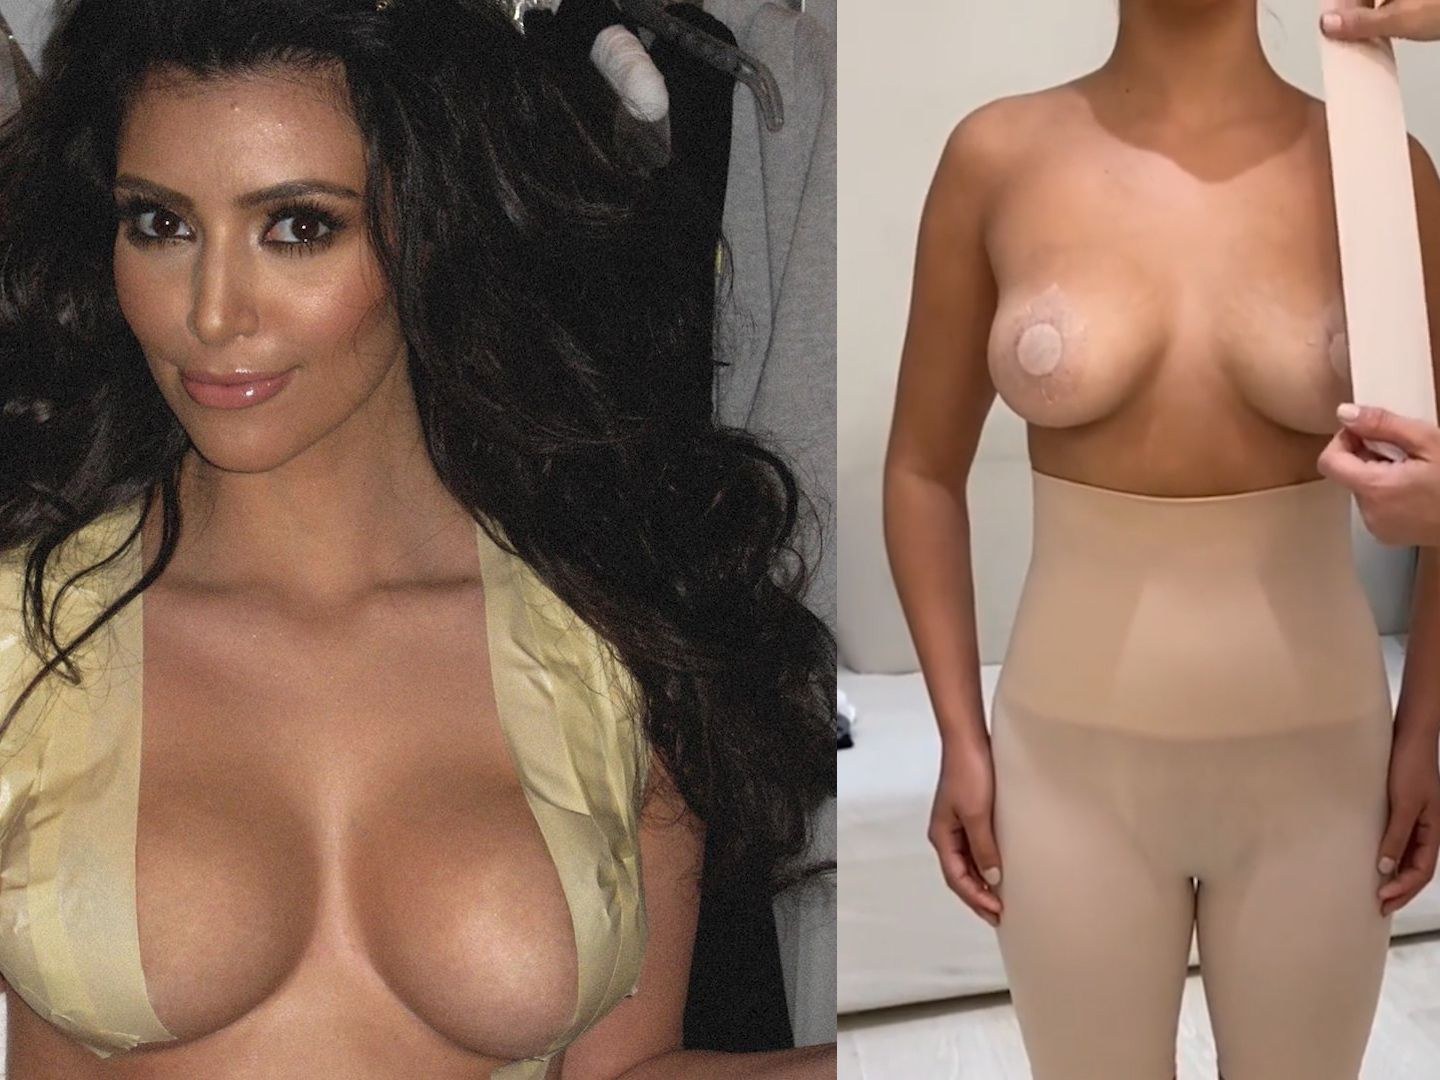 Courtney kardashian tits